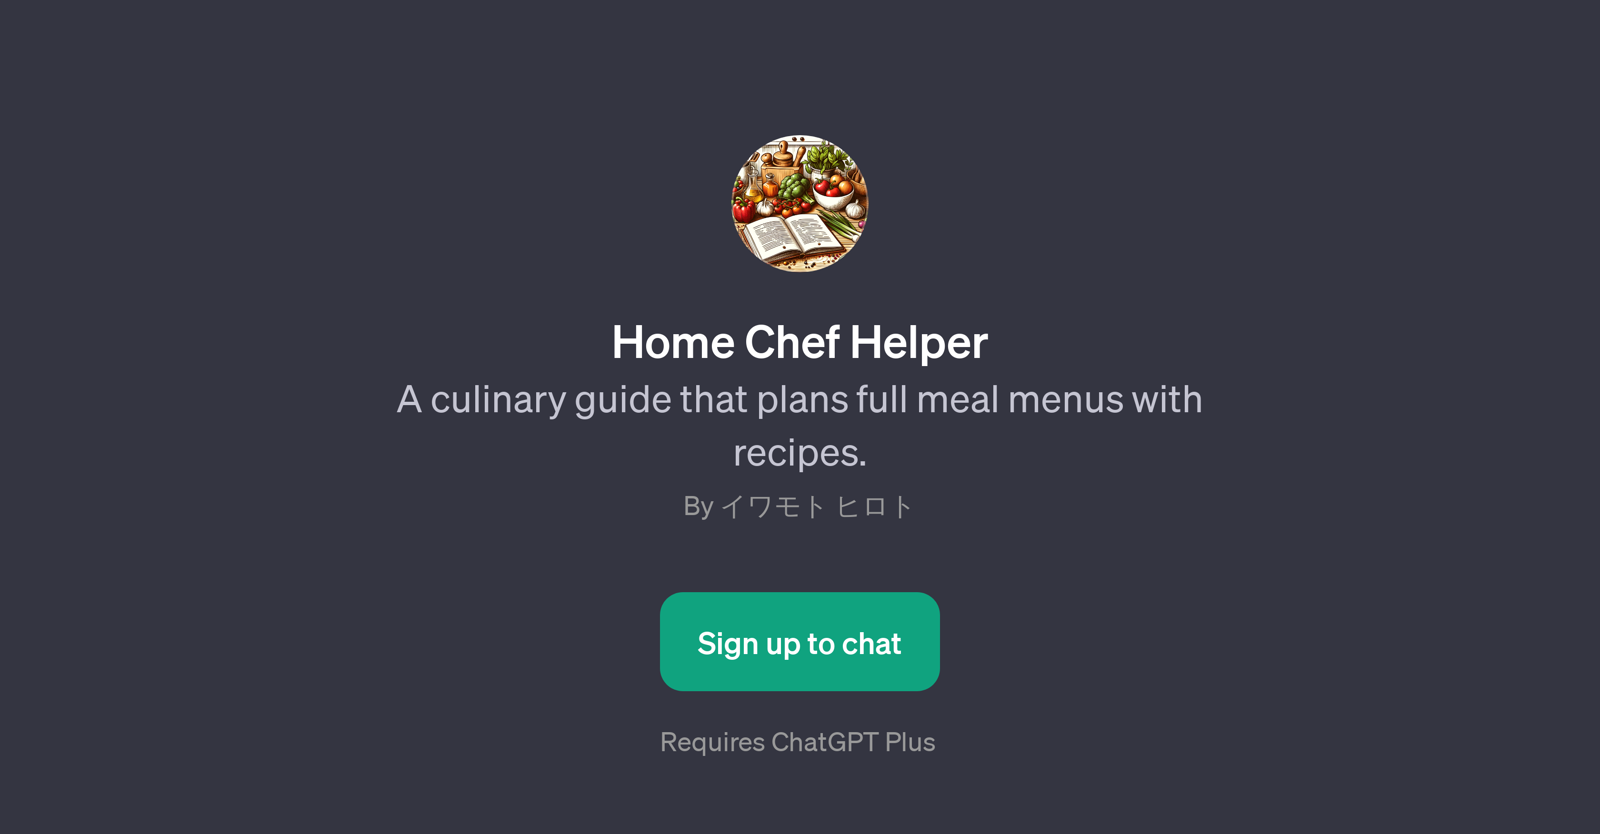 Home Chef Helper website